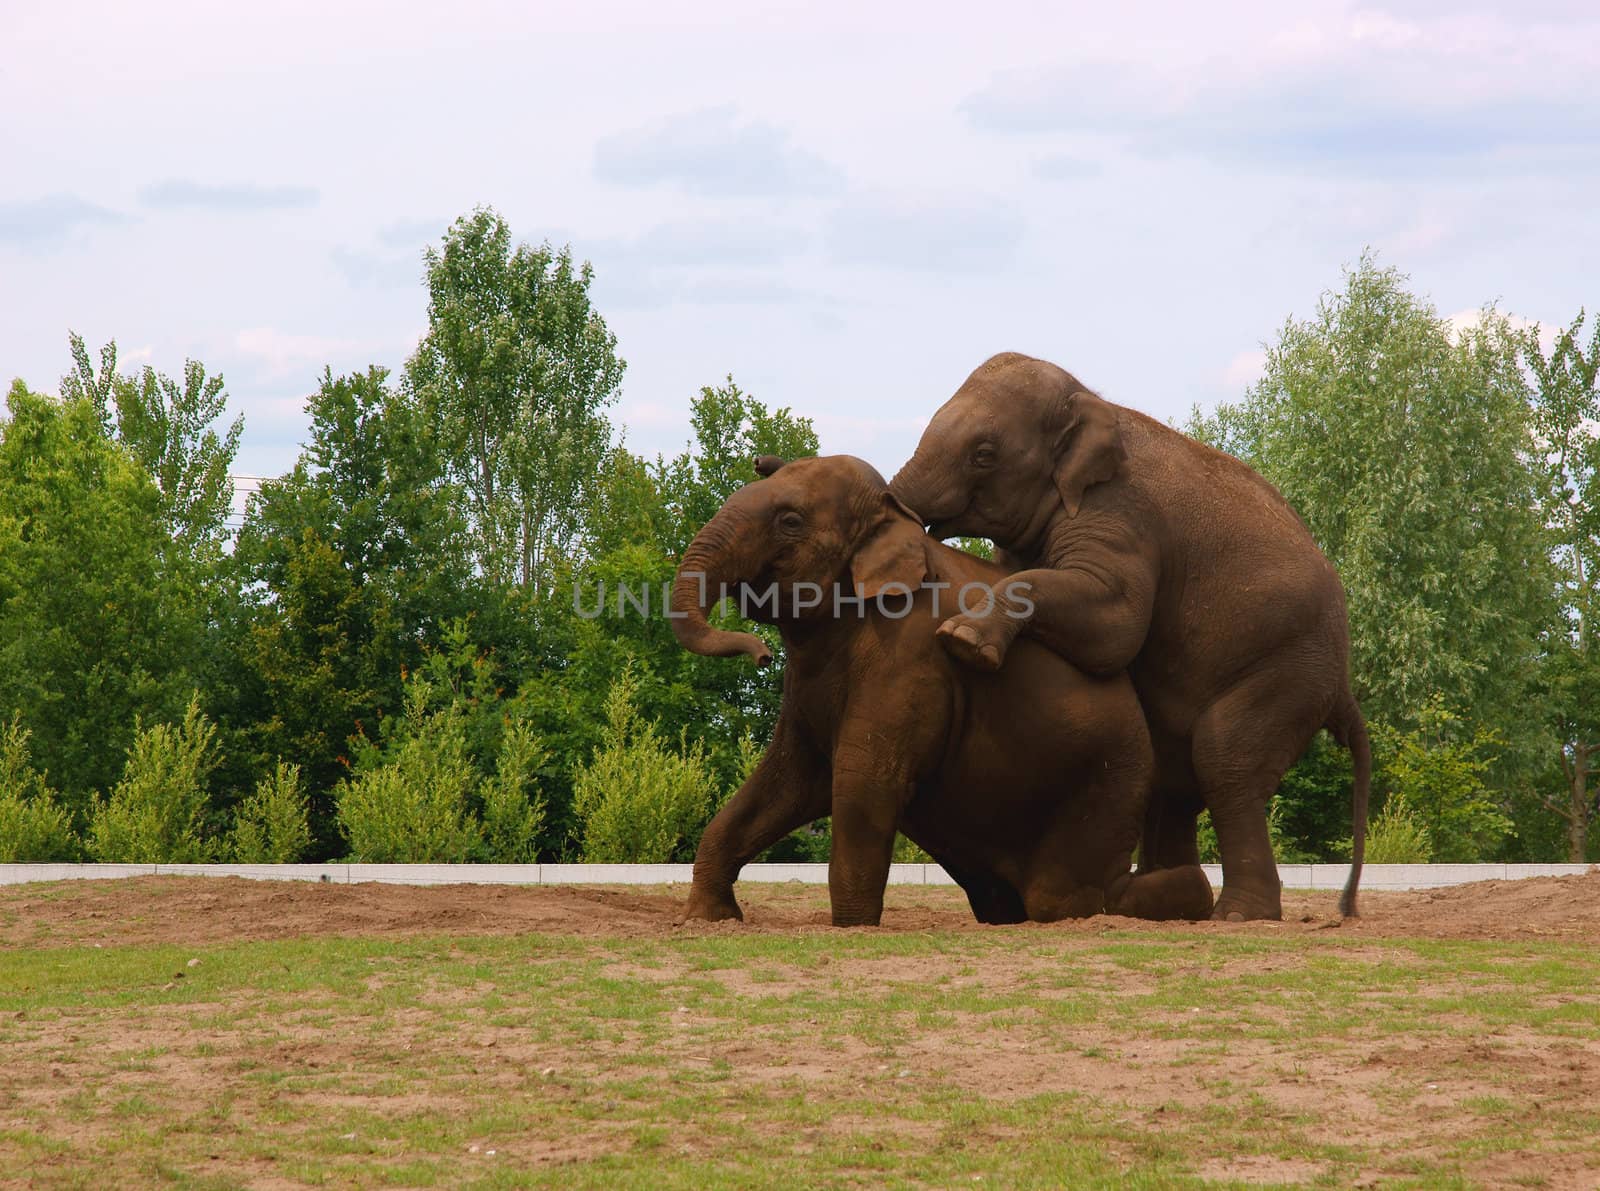 Elephants, trying to make a small elephant